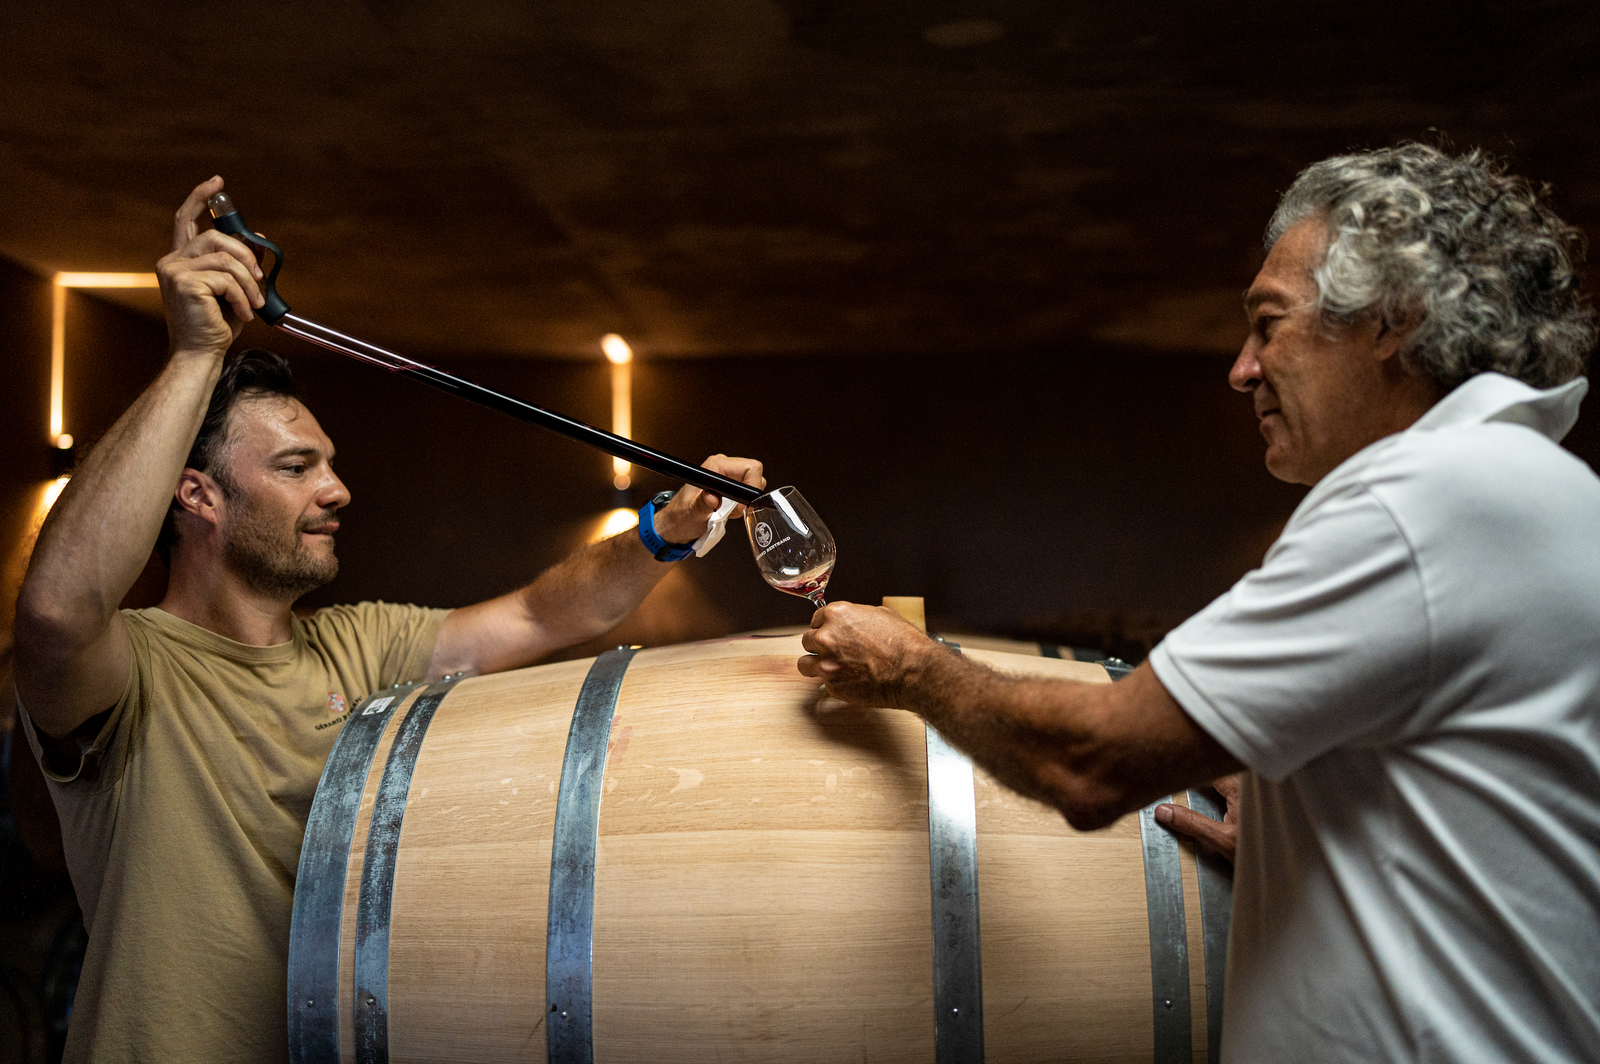 La culture du vin dans le monde : traditions et coutumes d’ailleurs